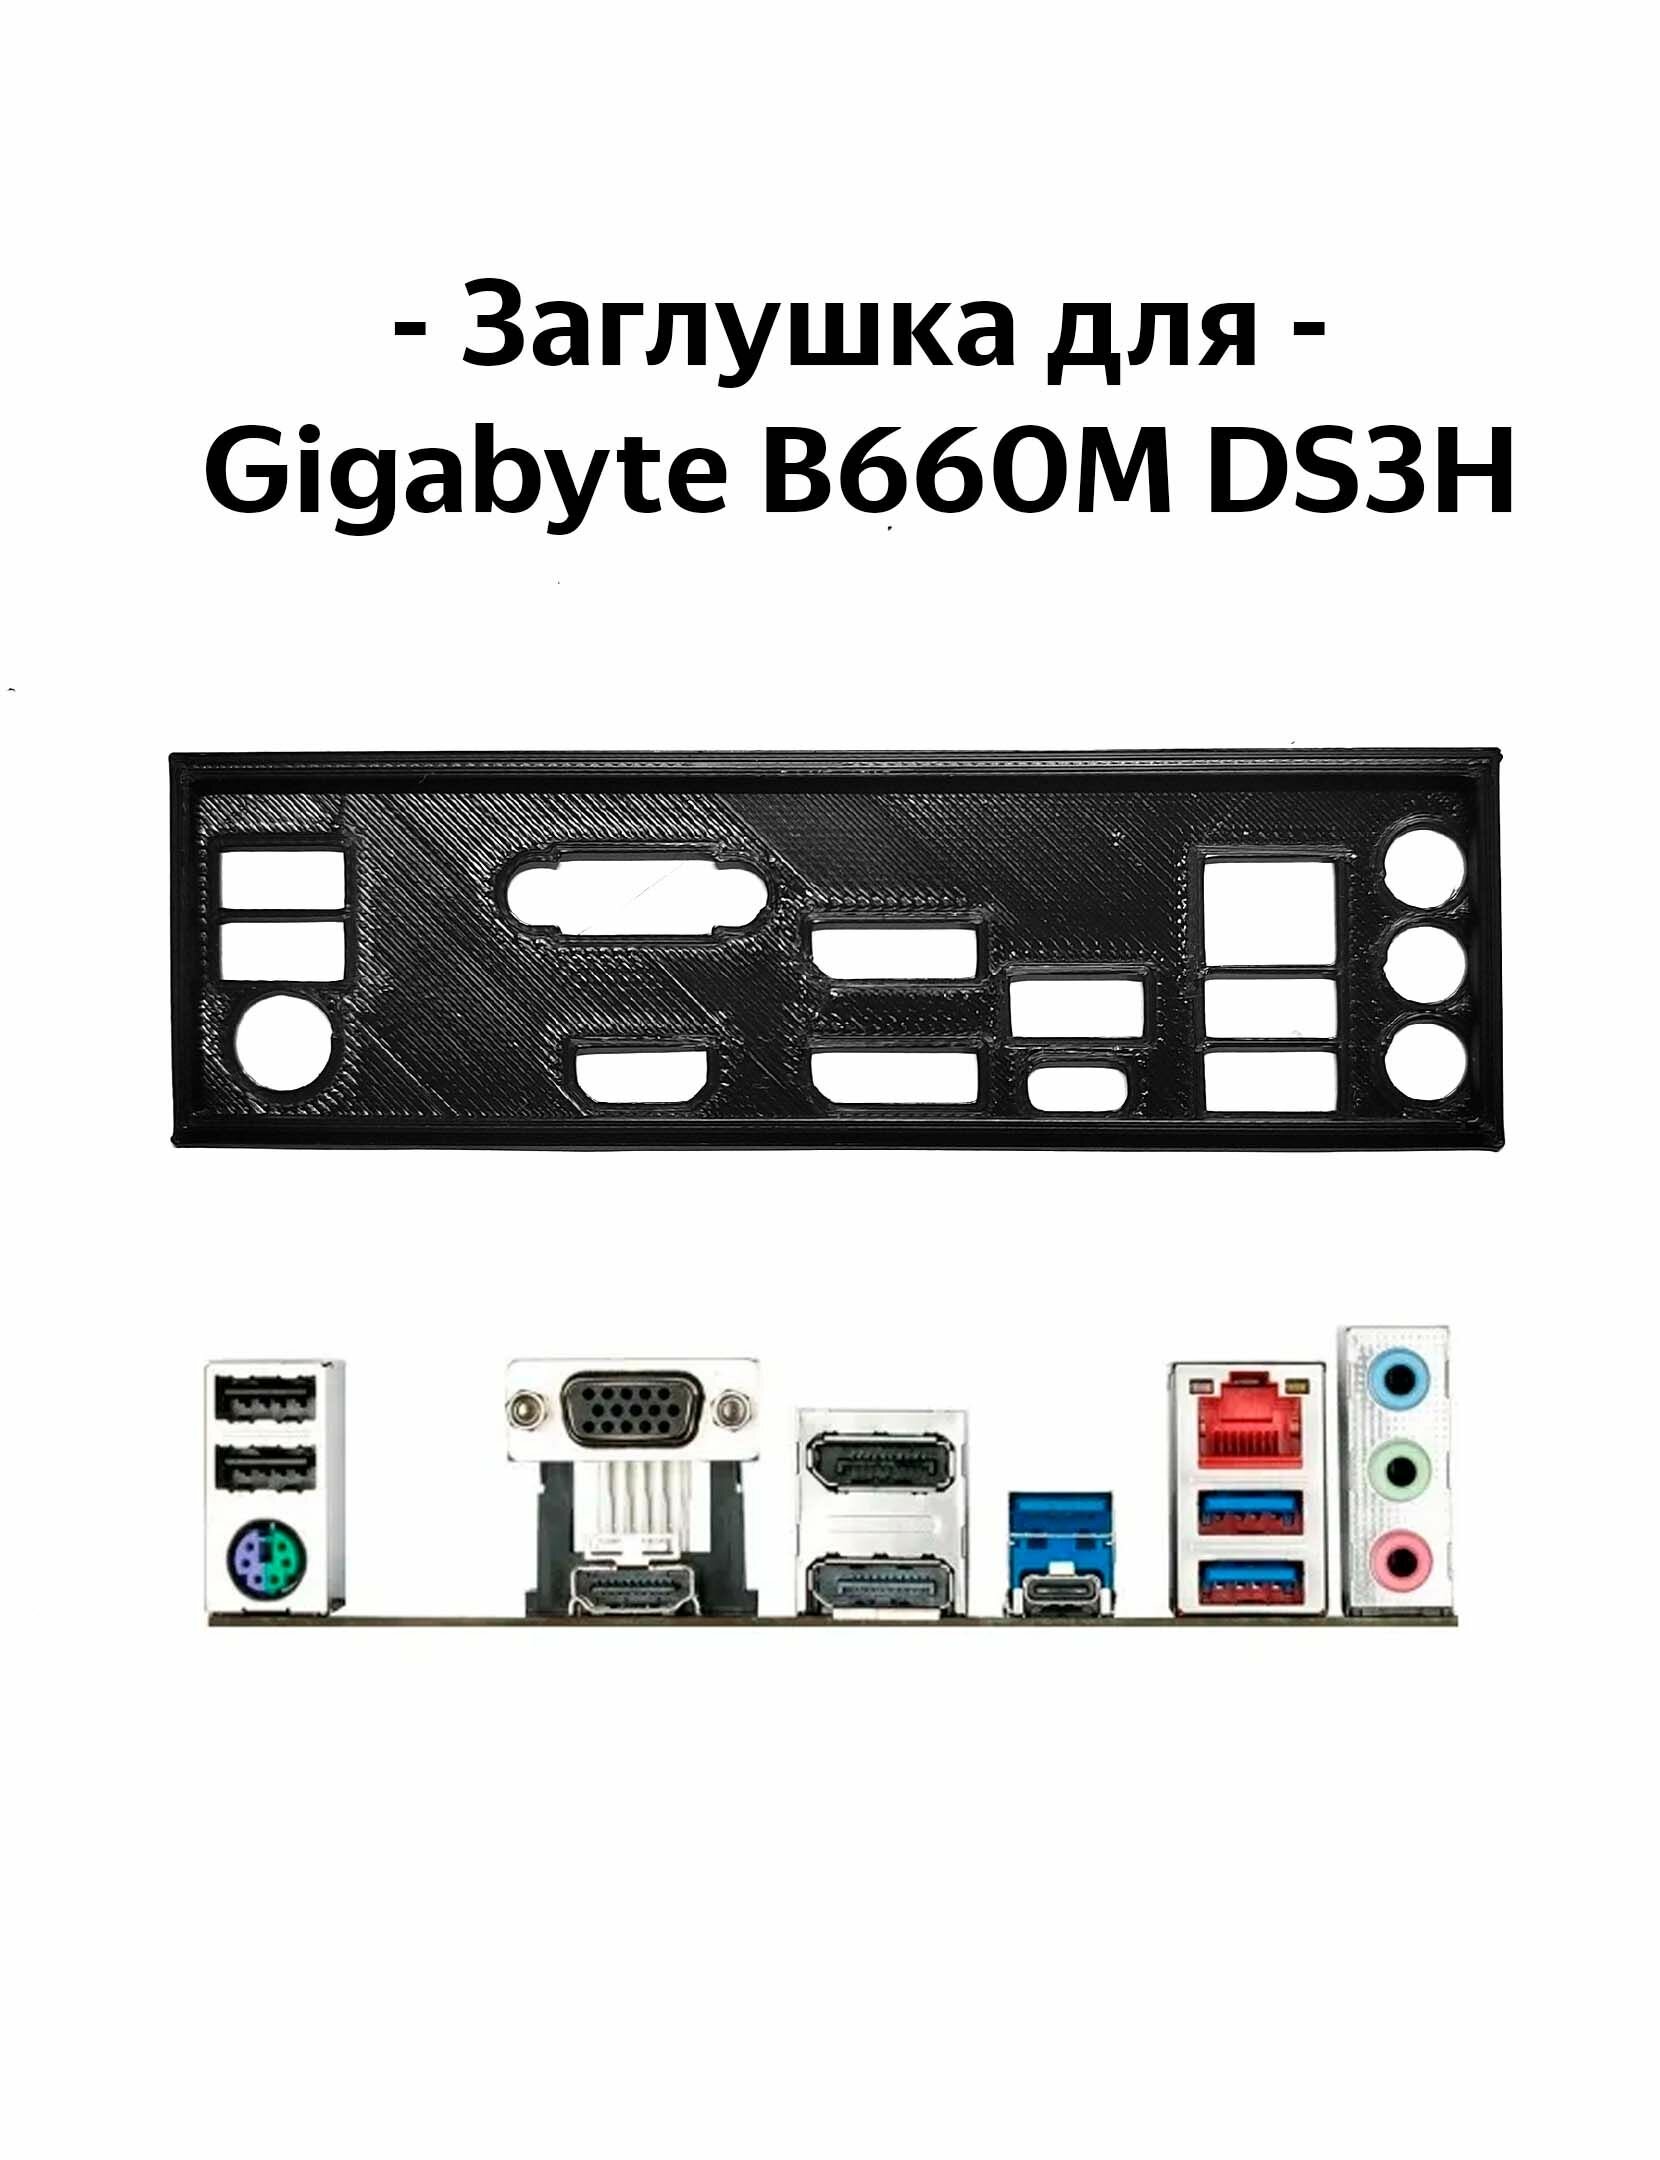 Пылезащитная заглушка, задняя панель для материнской платы Gigabyte B660M DS3H